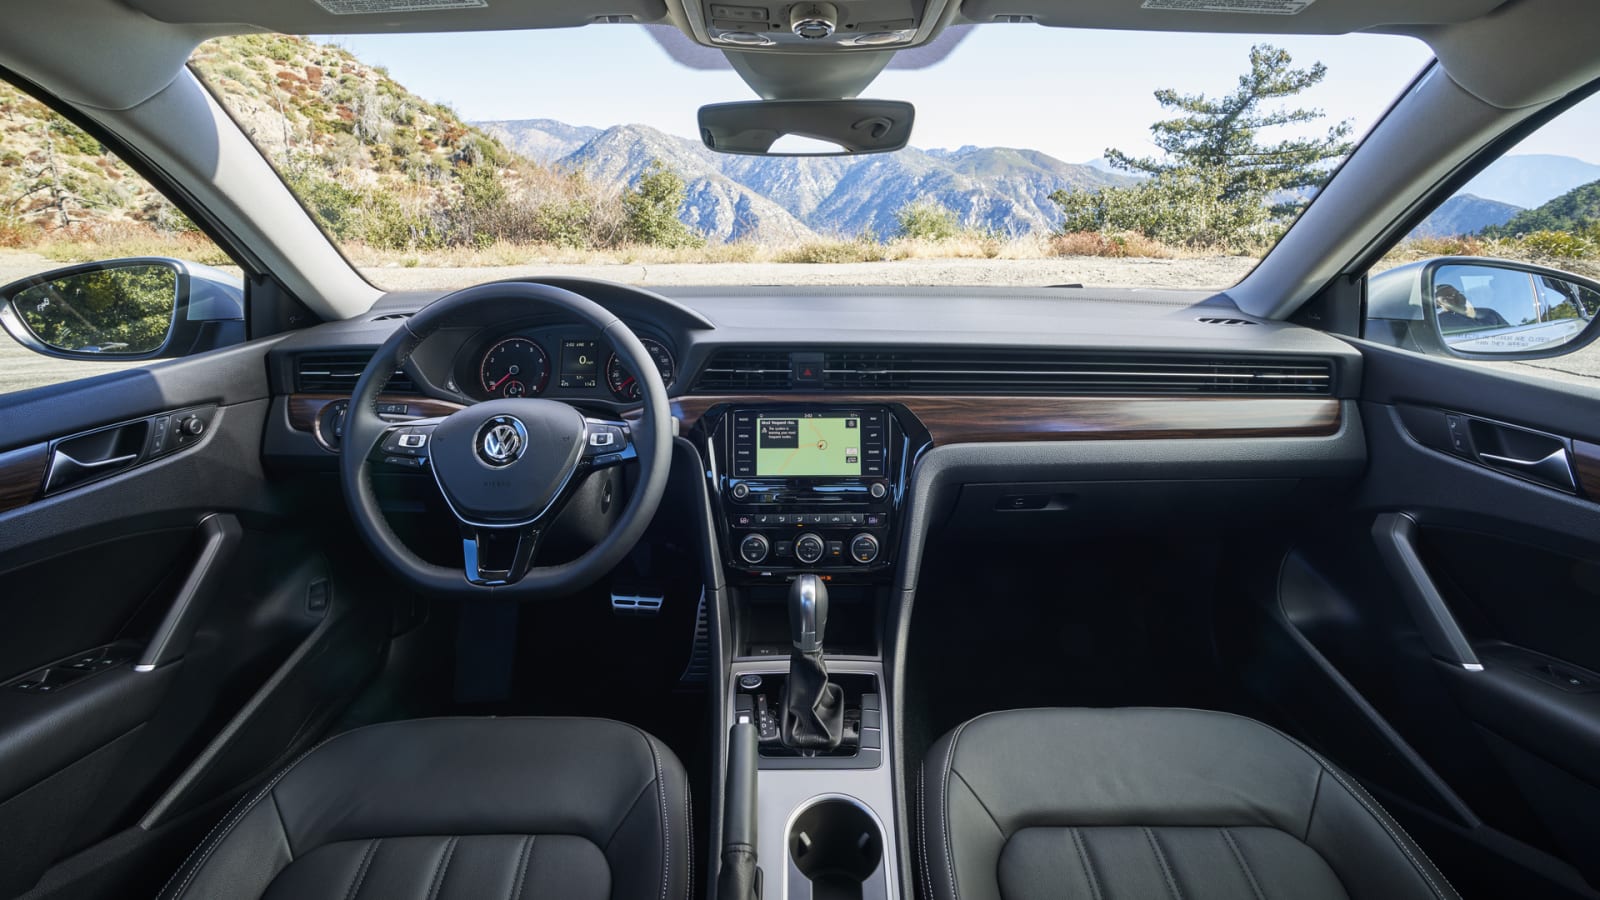 2020 Volkswagen Passat Review Price Specs Features And